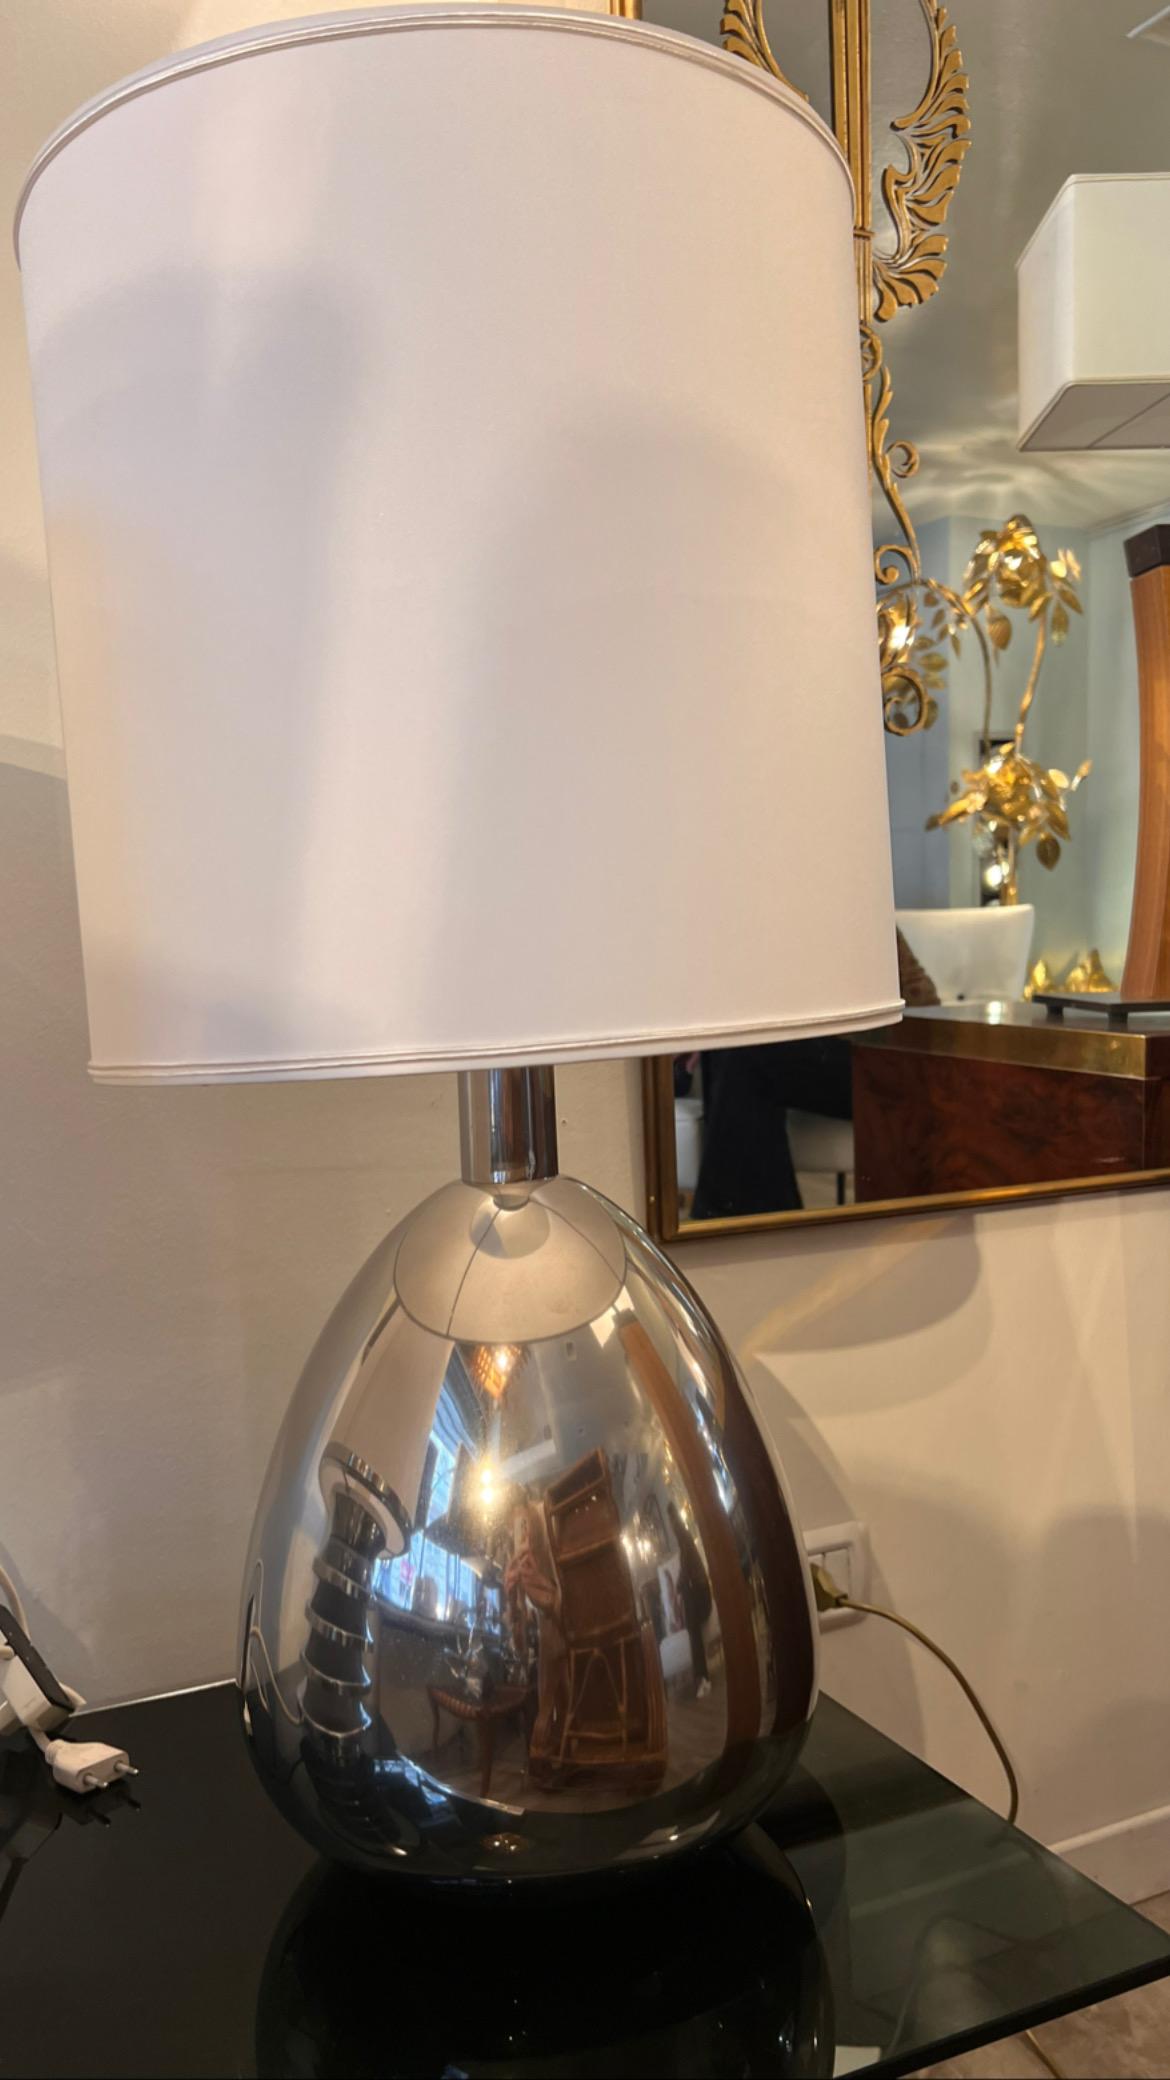 Lampe de table en acier chromé des années 1970 avec abat-jour blanc. 
Cette lampe est de forme ovoïde et possède un système de câblage original.
Taille de la lampe : 